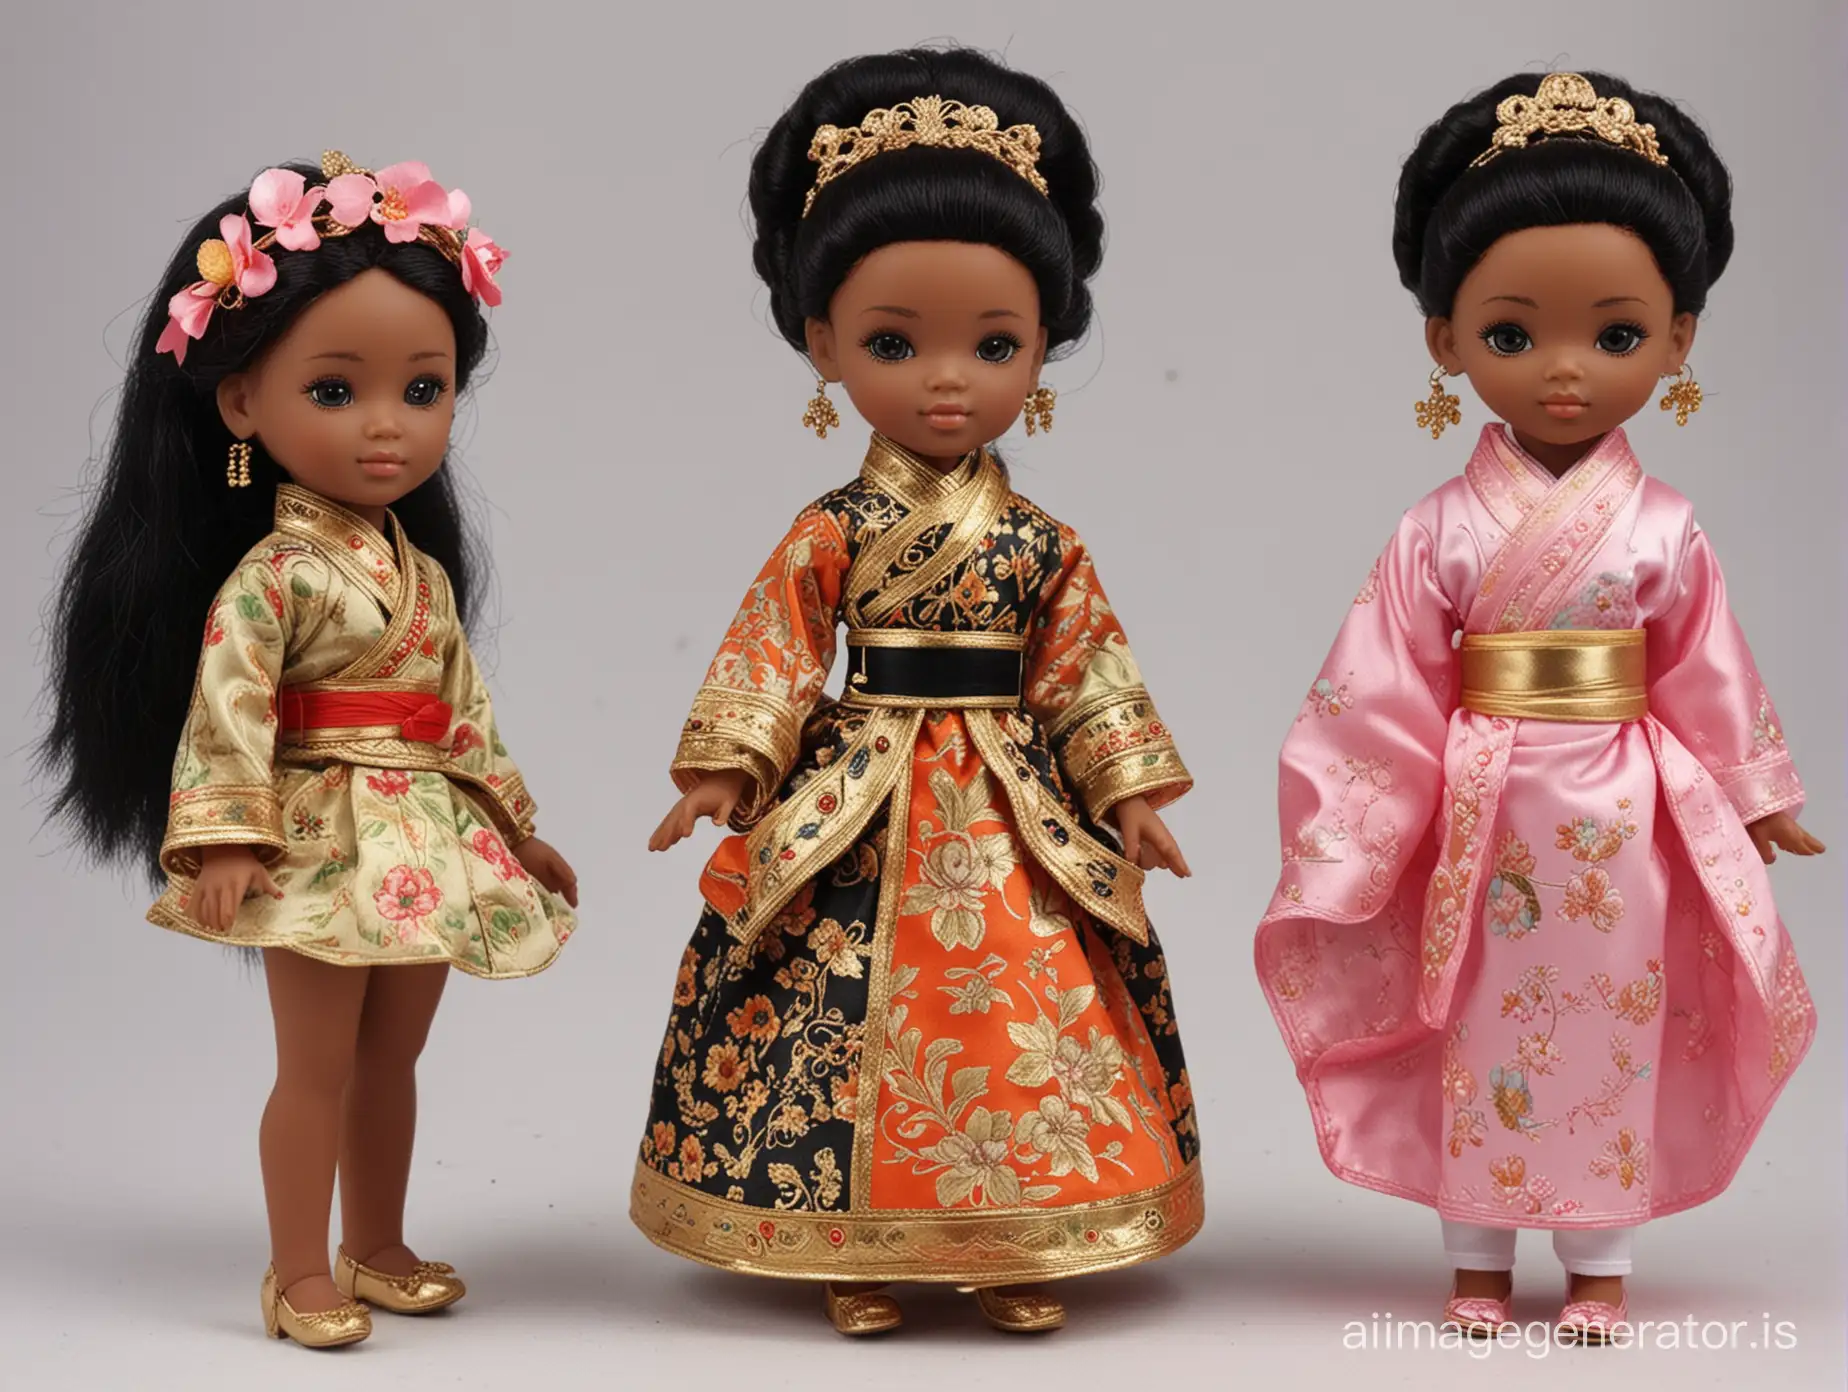 bambole orientali e bambole con la pelle nera


